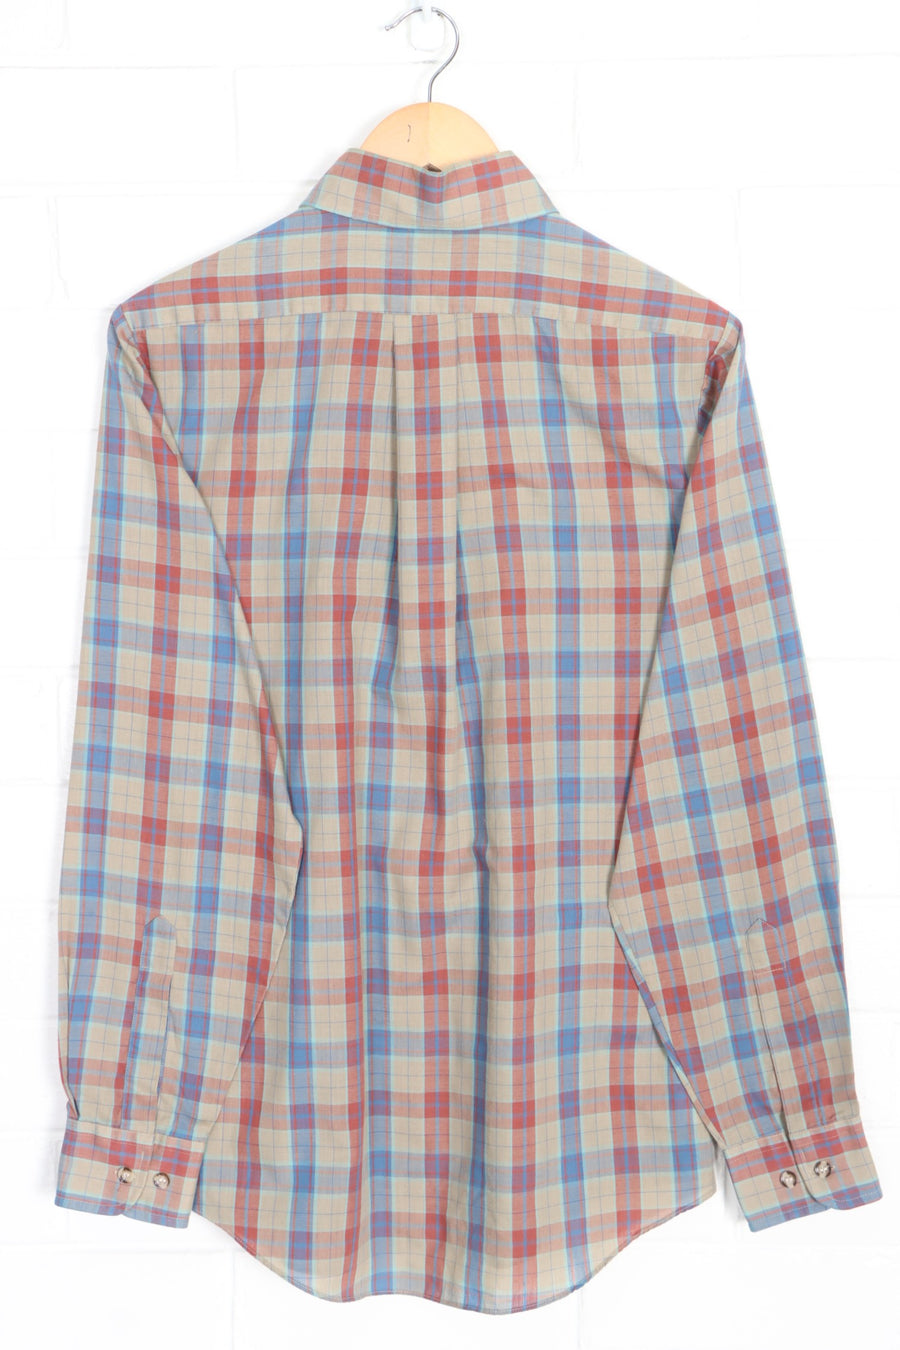 LEE MR Lightweight Madras Plaid Button Up Shirt (M)